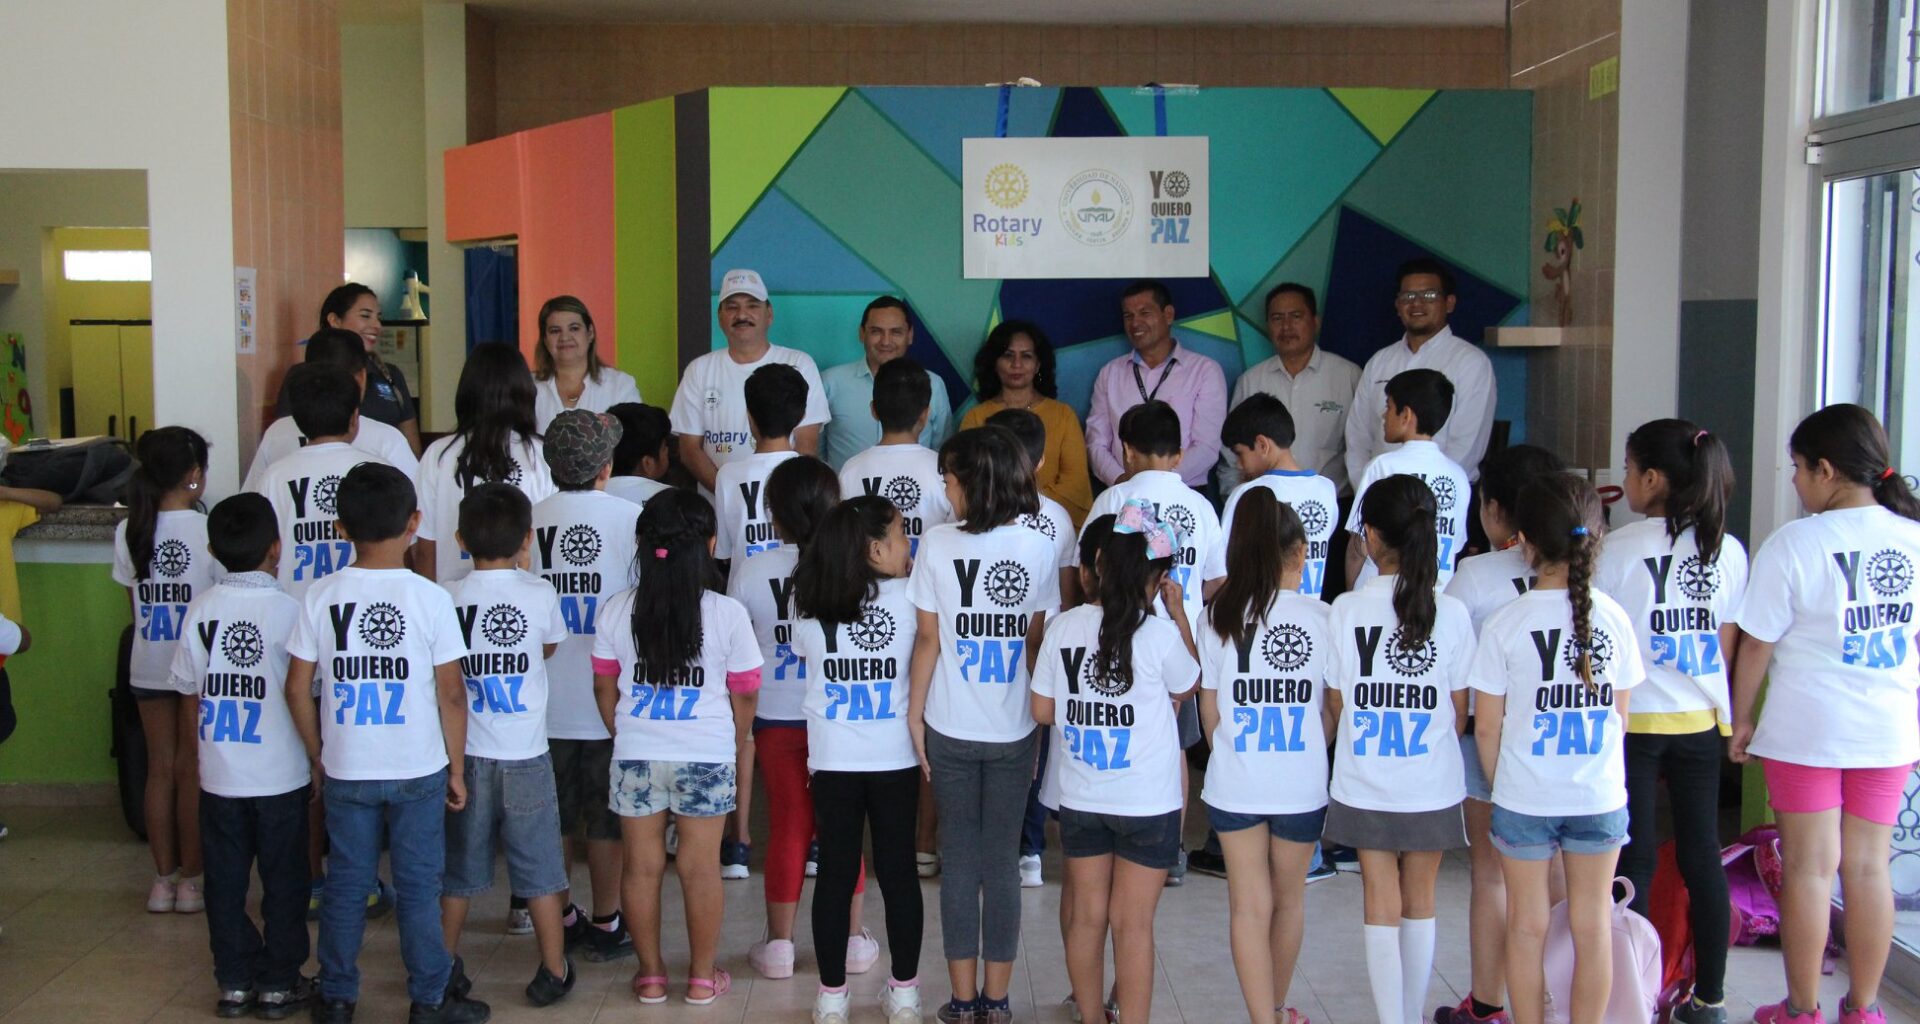 Grupo de niños y niñas con camisa color blanca y letras atras que dicen "Yo quiero paz"